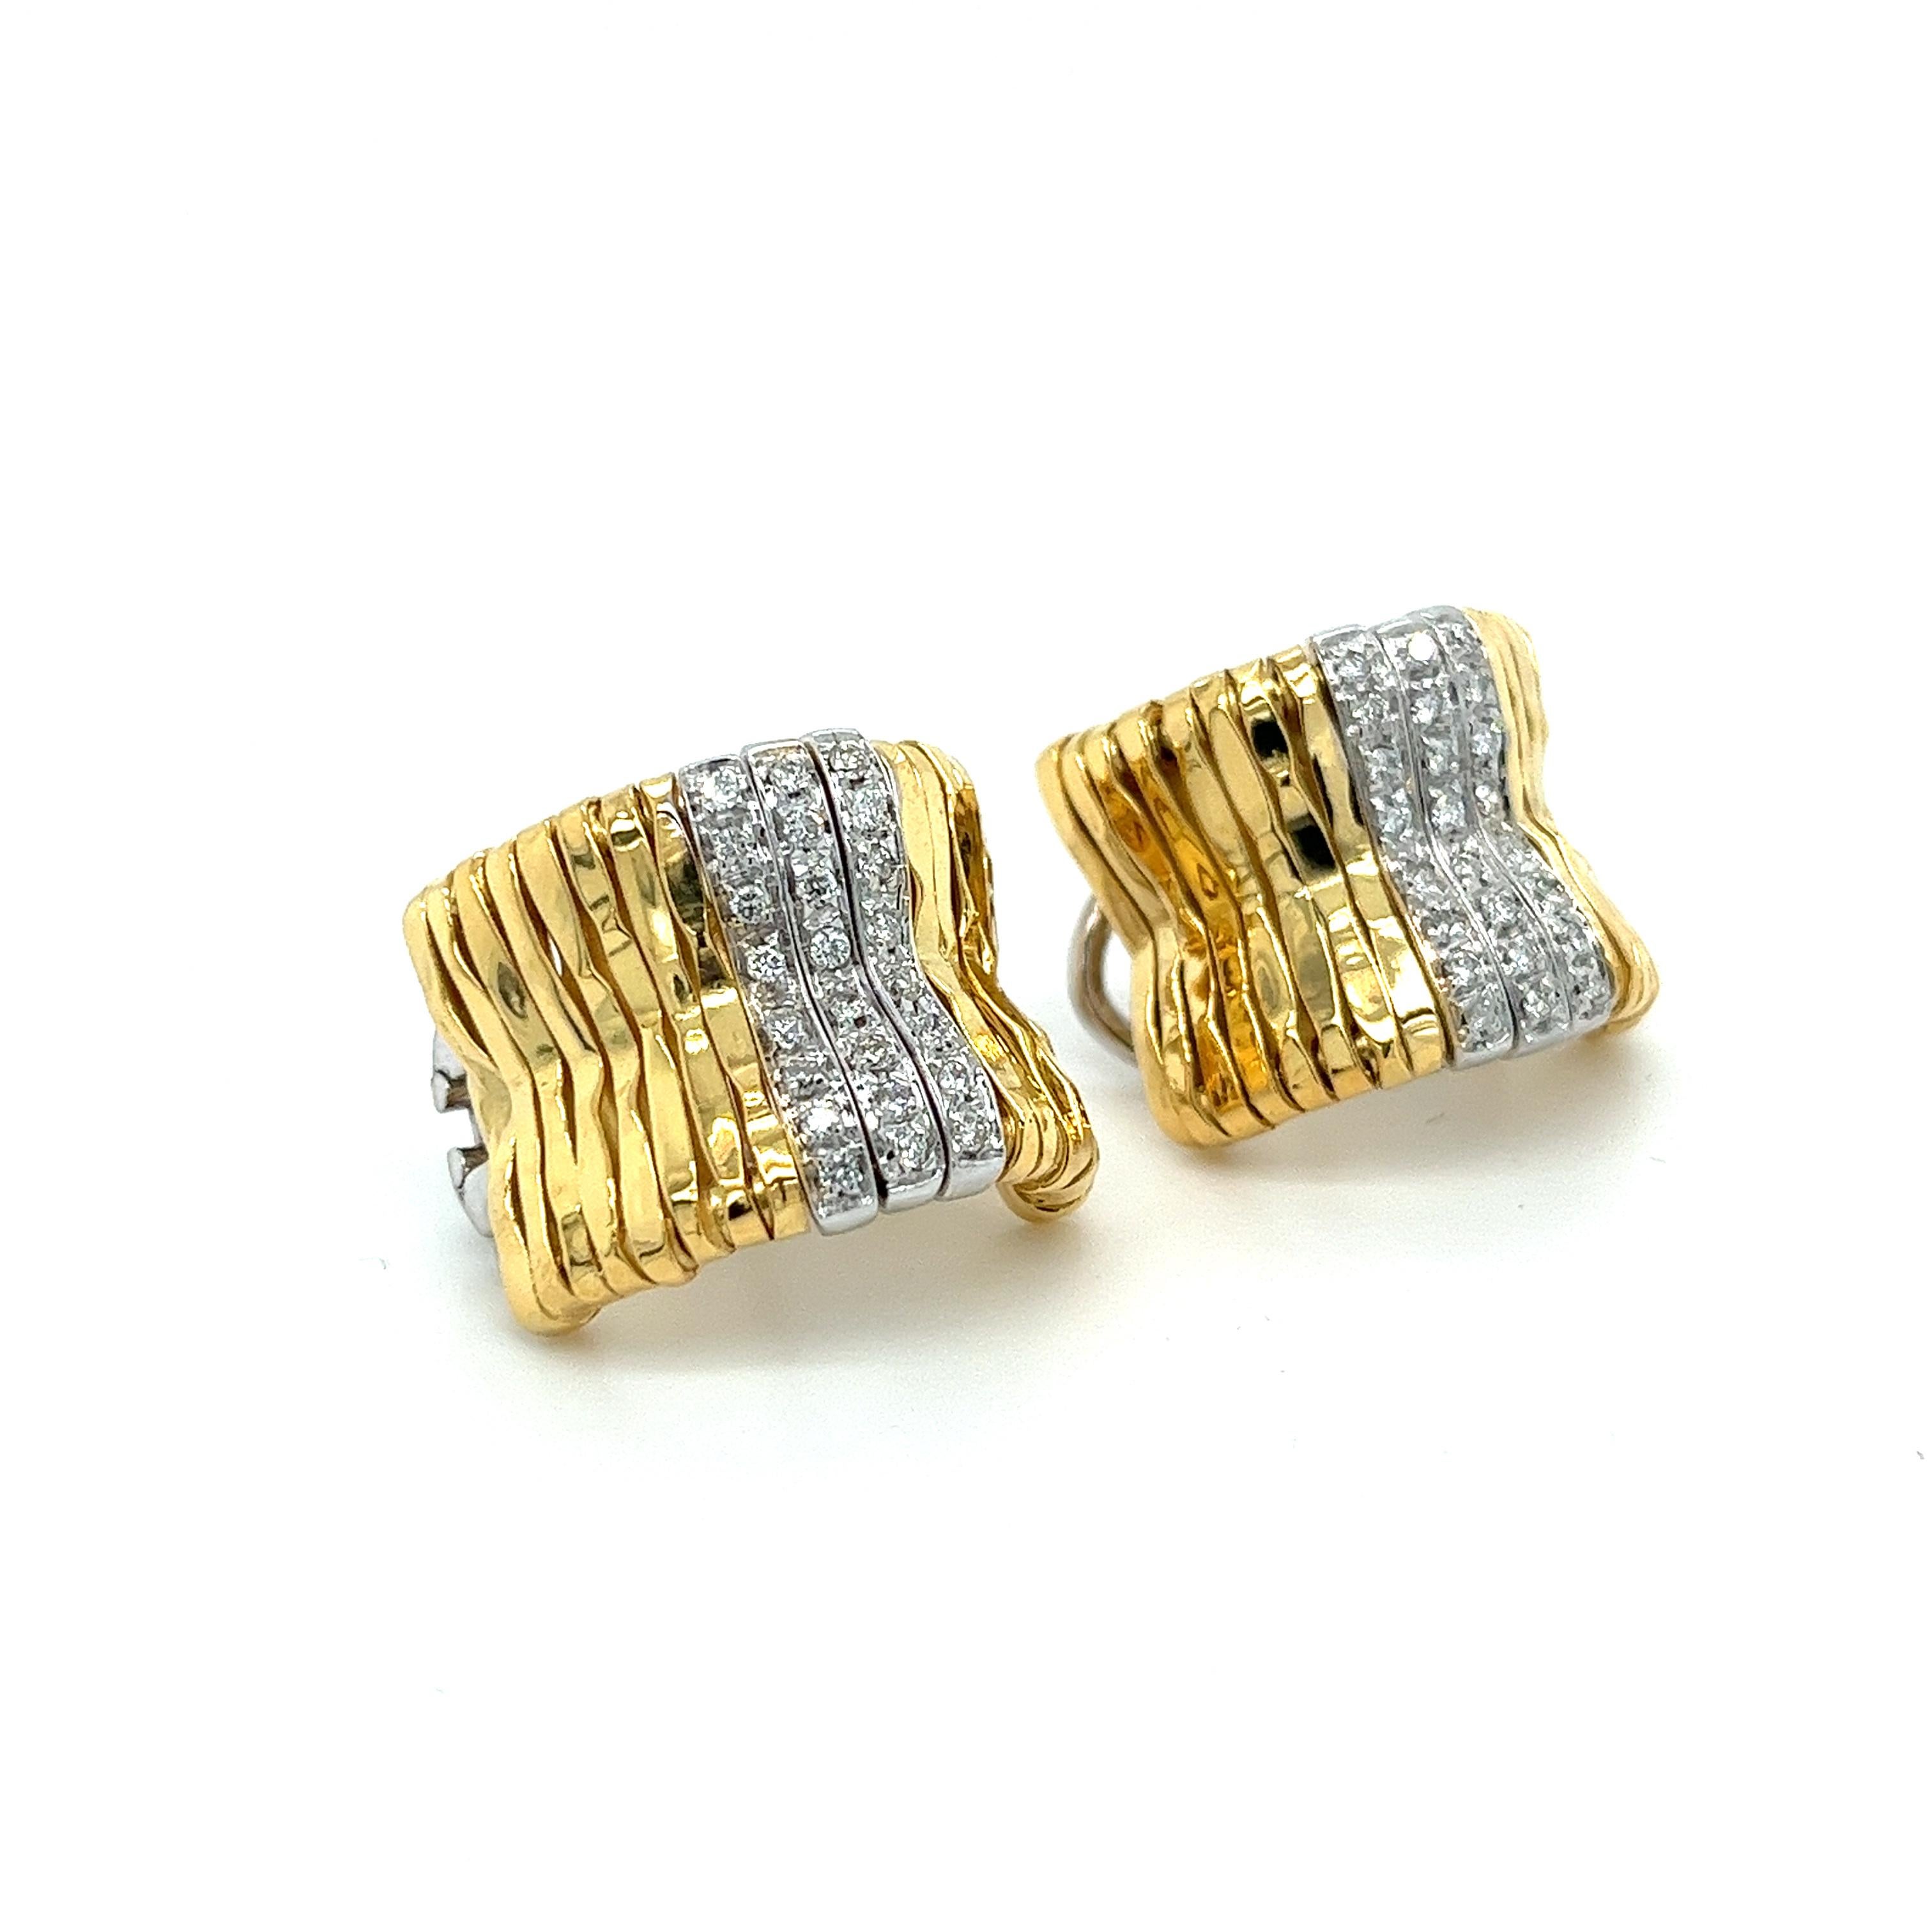 Orlando Orlandini signiert handgefertigte 18K Gelbgold gerippte Bar Stil umarmen Reifen mit 3 Reihen von Weißgold pflastern gesetzt rund geschliffenen Diamanten. Diese Vintage-Ohrringe sind mit 48 Diamanten im Brillantschliff von insgesamt etwa 0,50